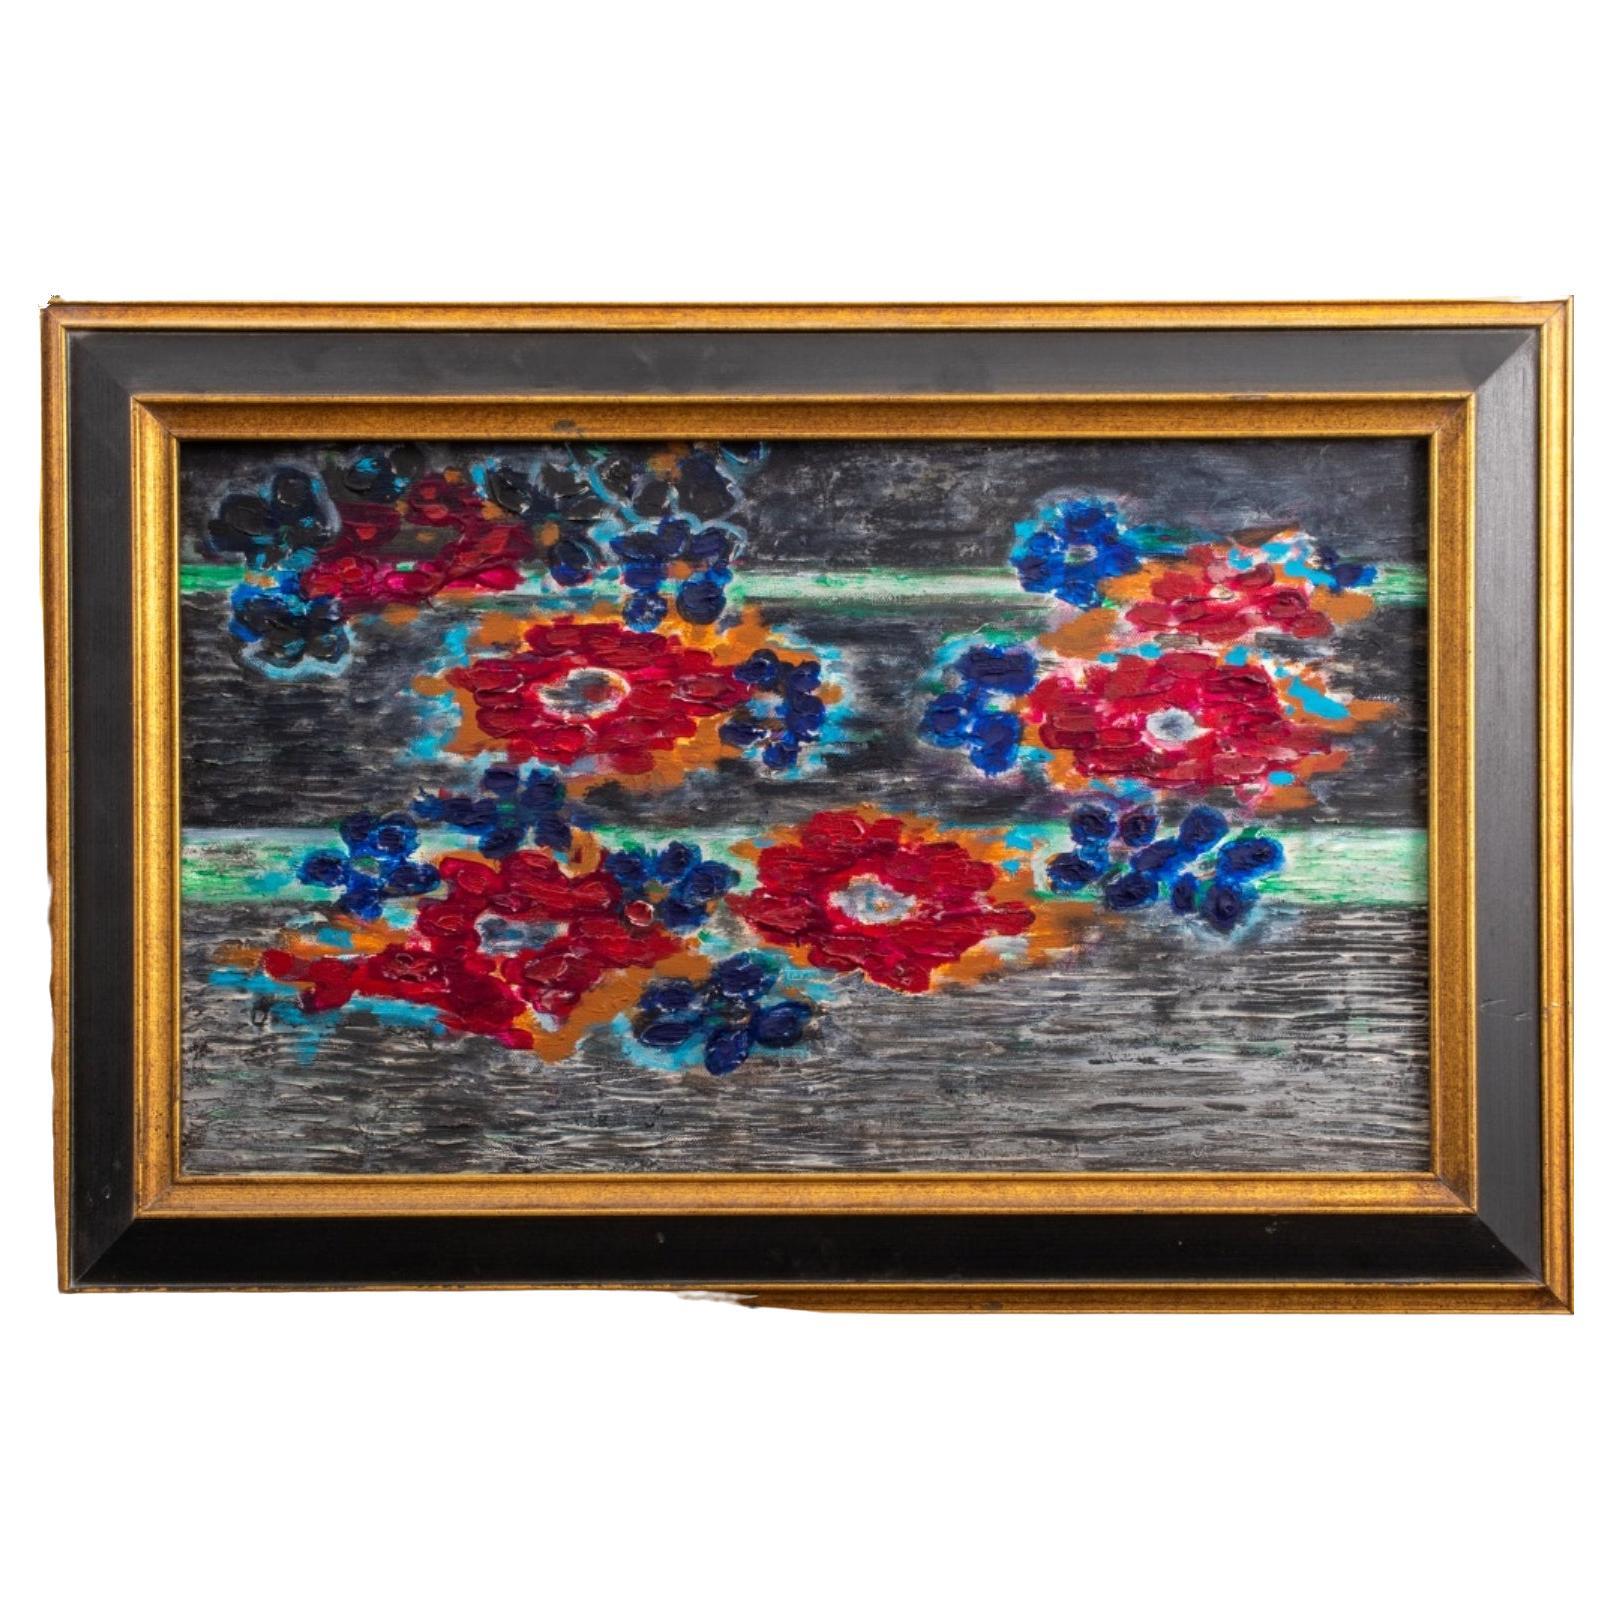 Kayo Lennar 'Floral Composition' Oil on Canvas